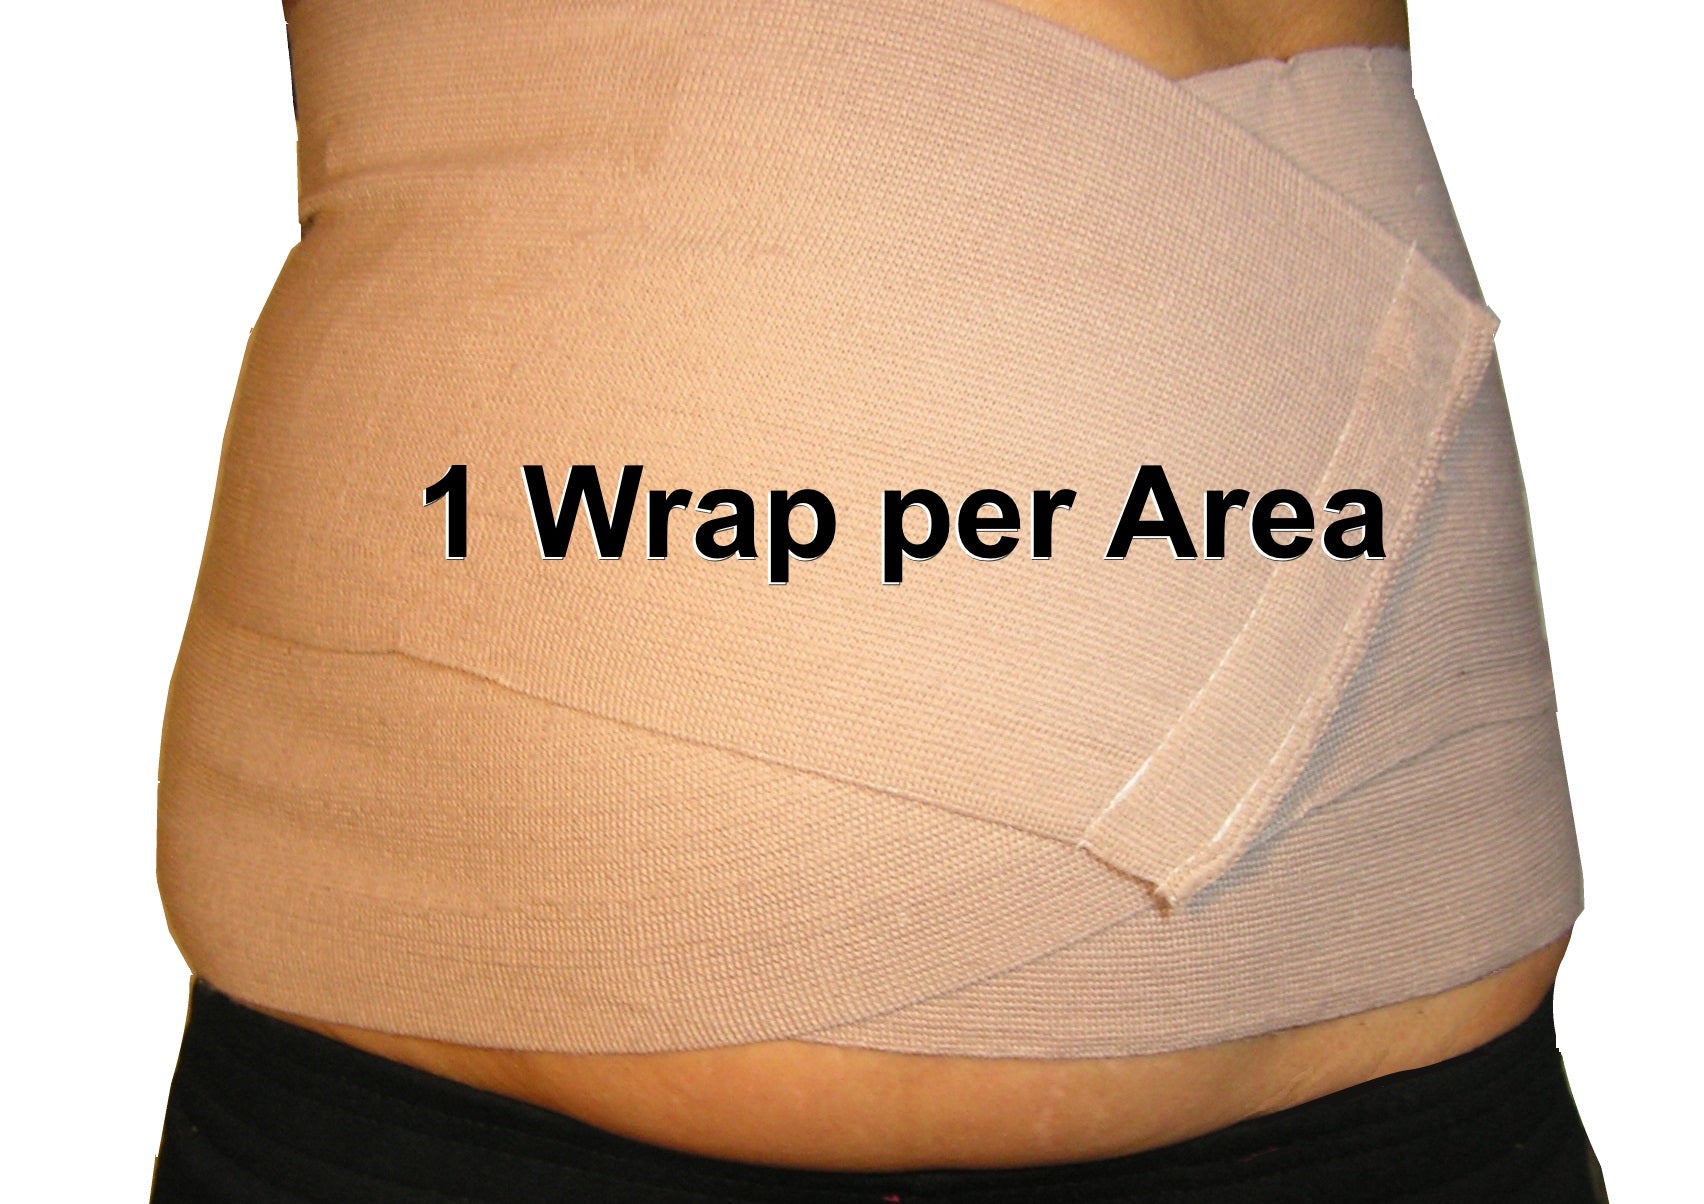 Pack of 3 Body Wrap Elastic Bandages - Ace Bandage with Velco